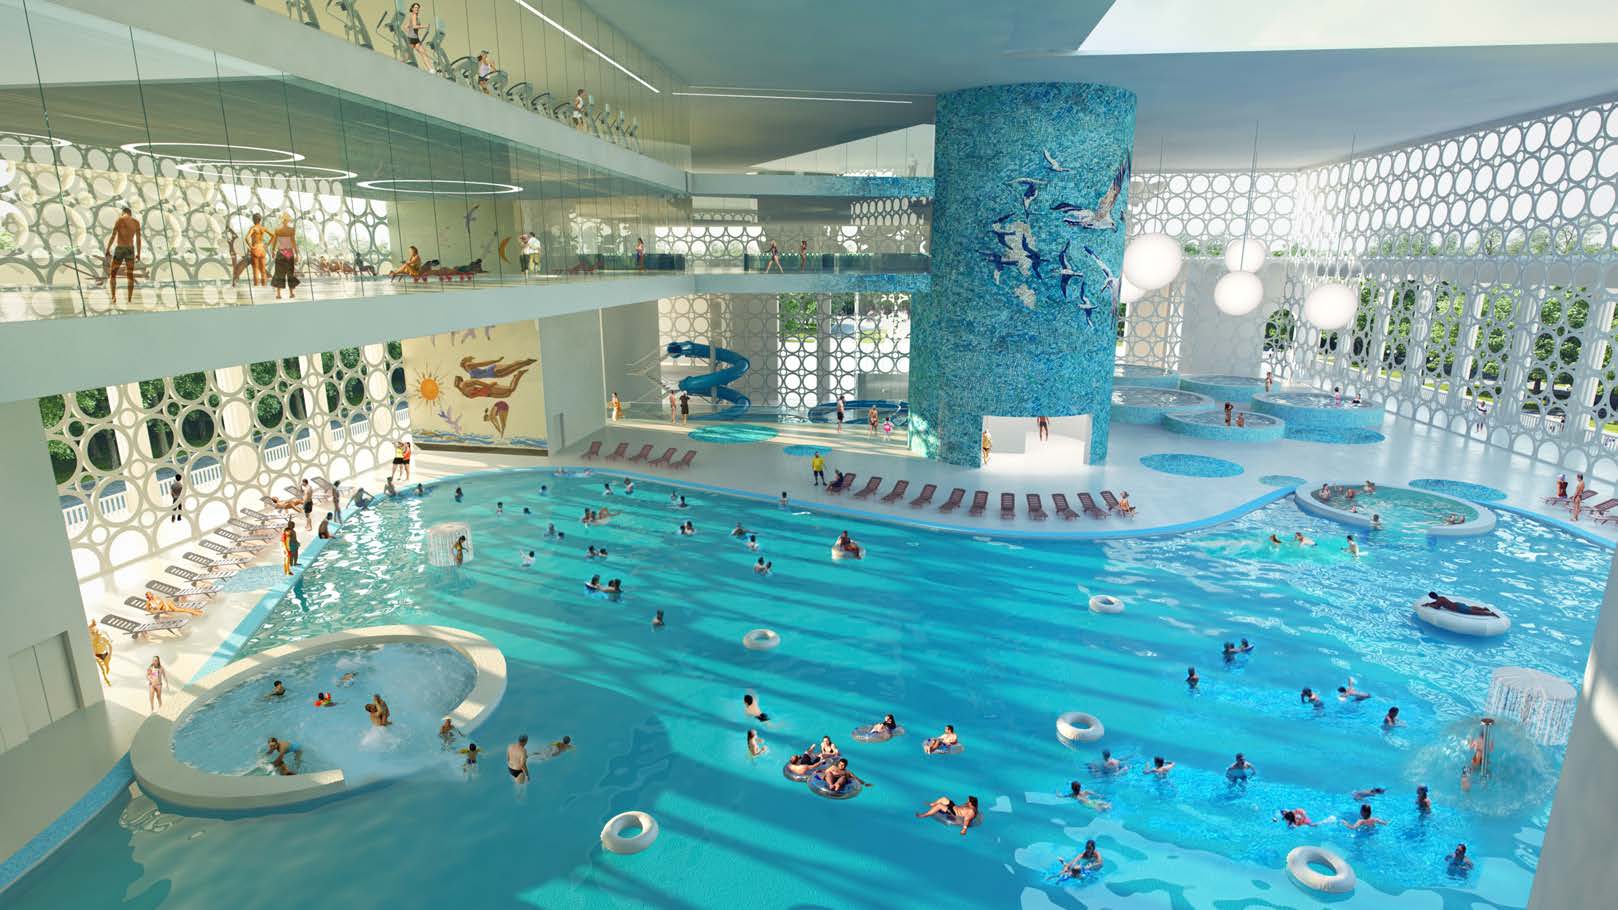 Reconstruction of Luzhniki pool